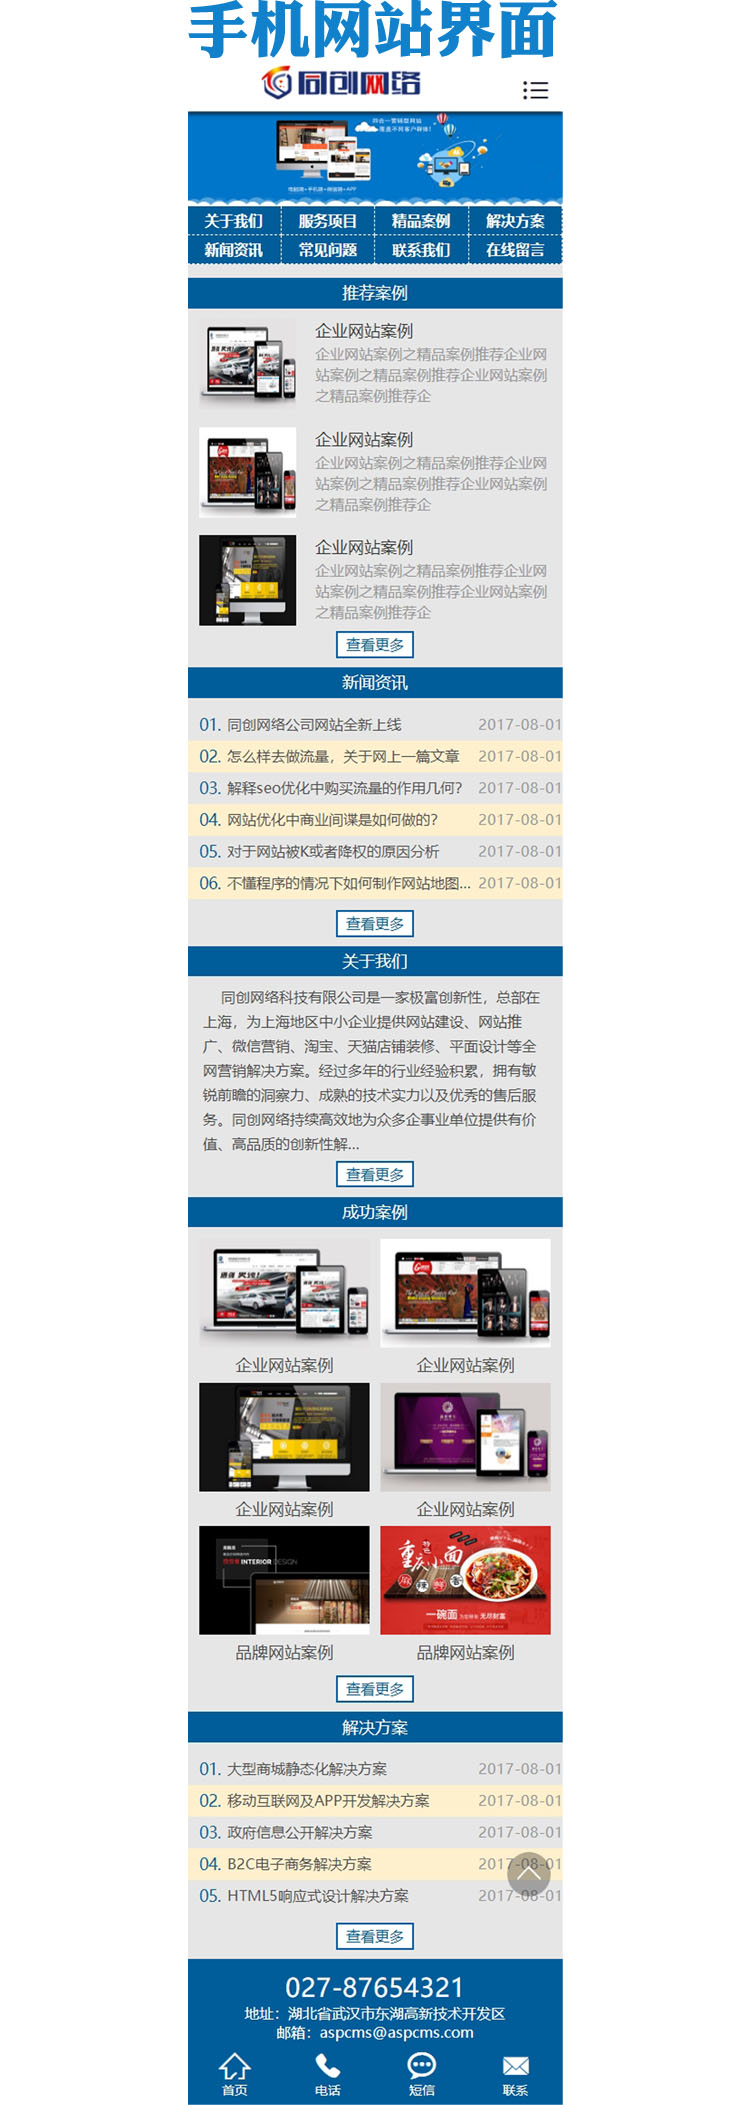 网络公司网站源码程序模板-ZP177-3